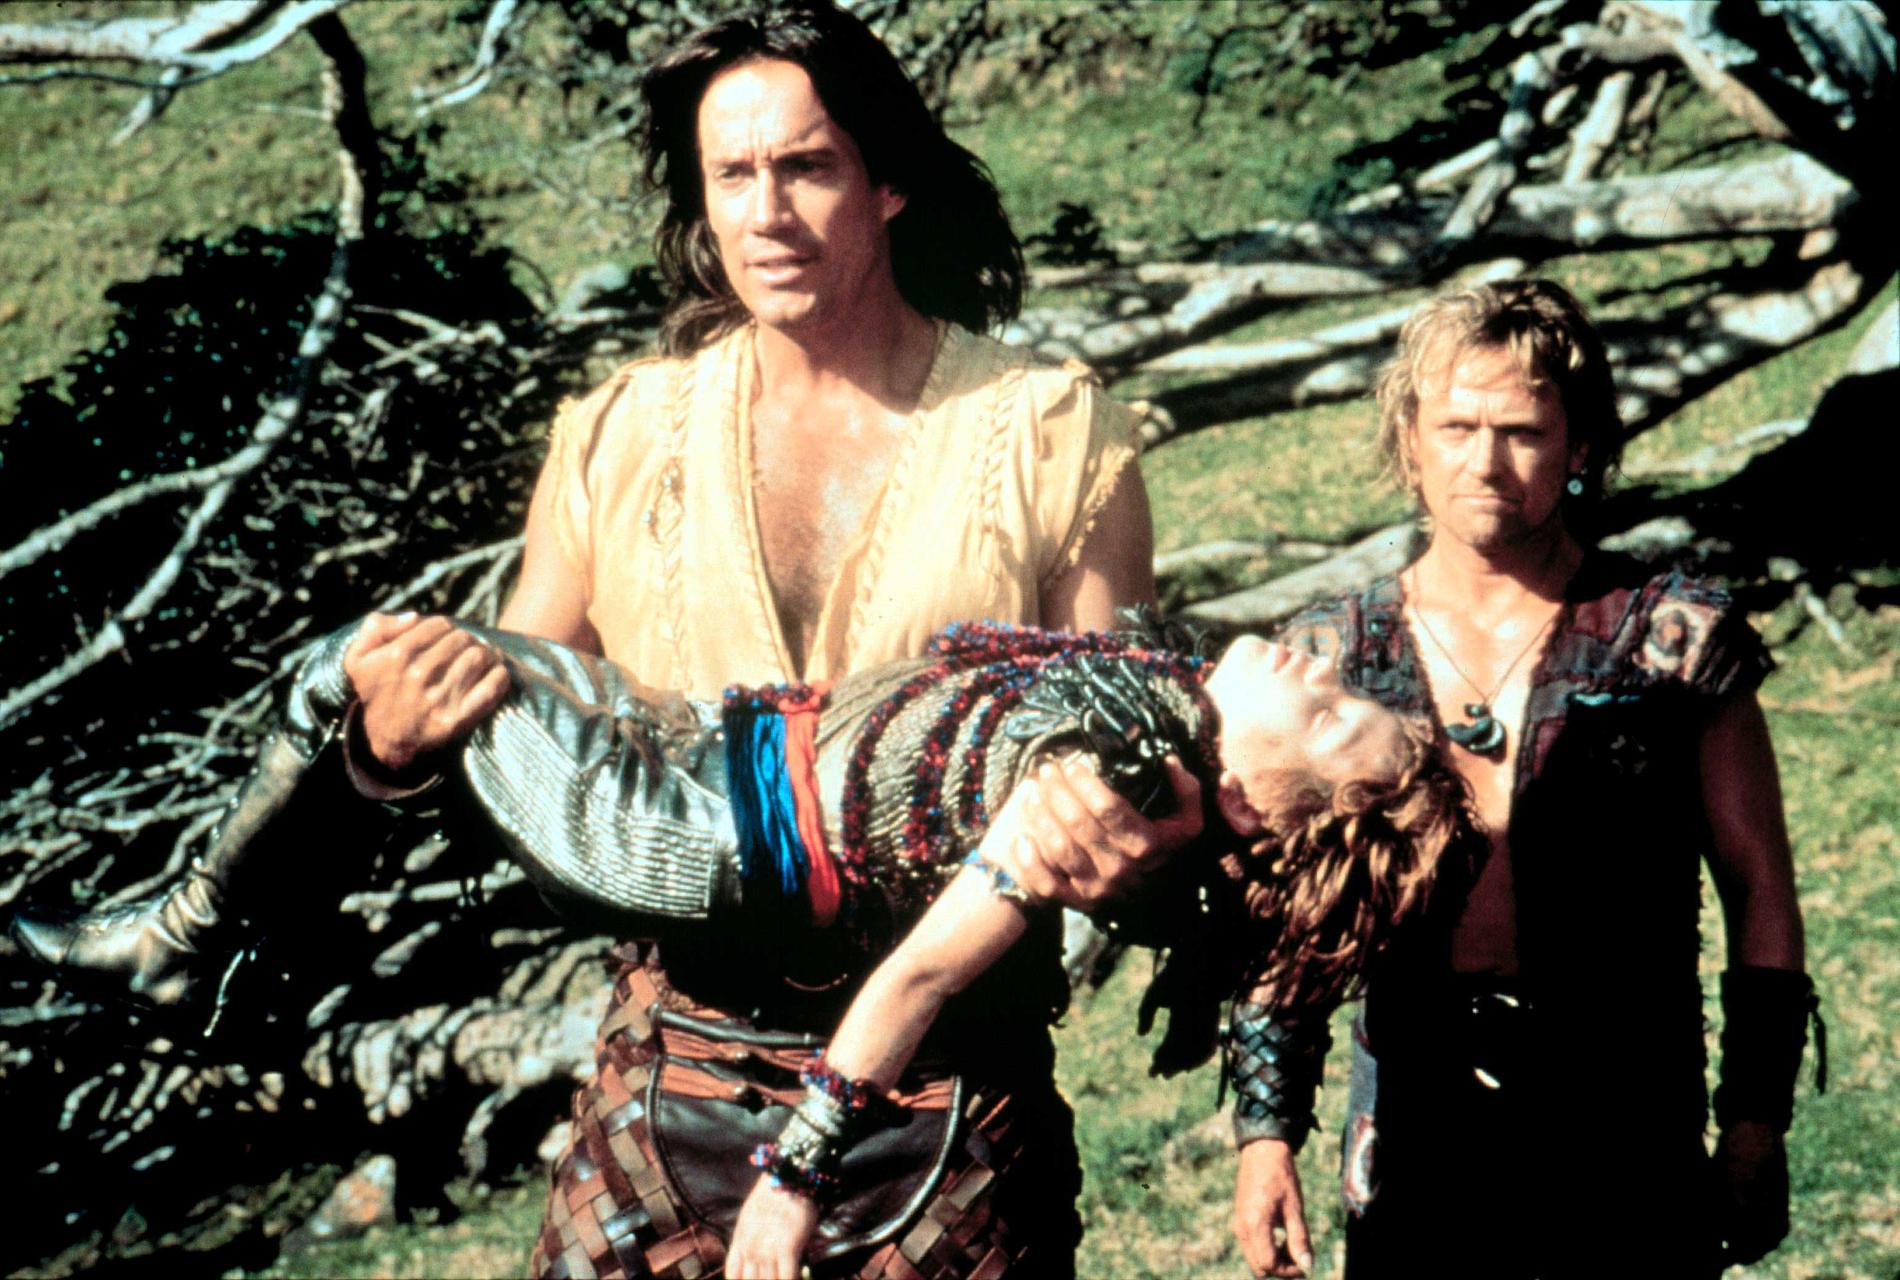 Sorbo spelade huvudrollen i den uppskattade 90–talserien ”Hercules”.